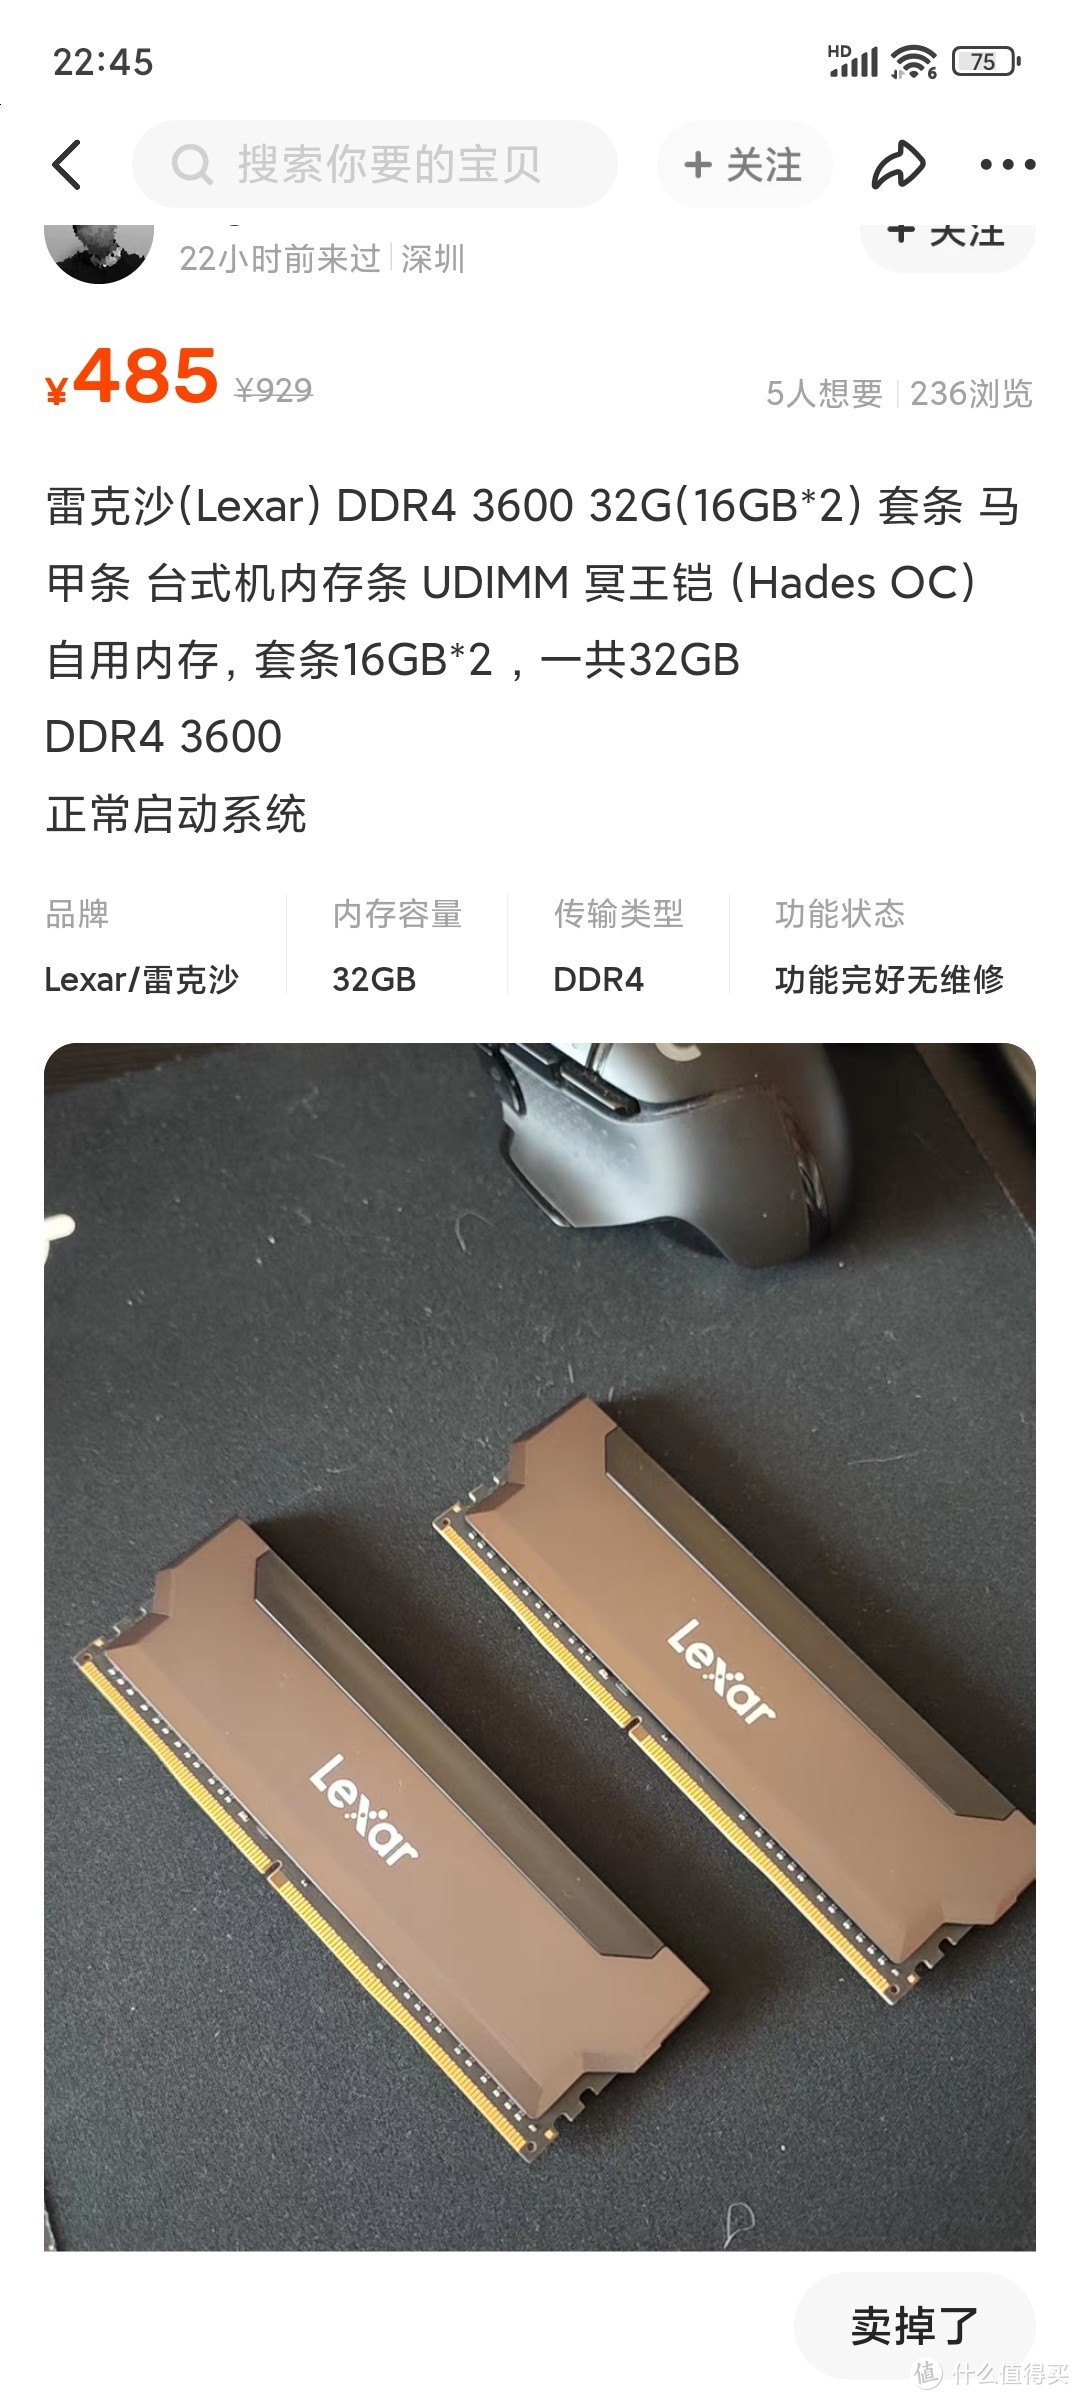 雷克沙冥王铠DDR4 3600 16G*2